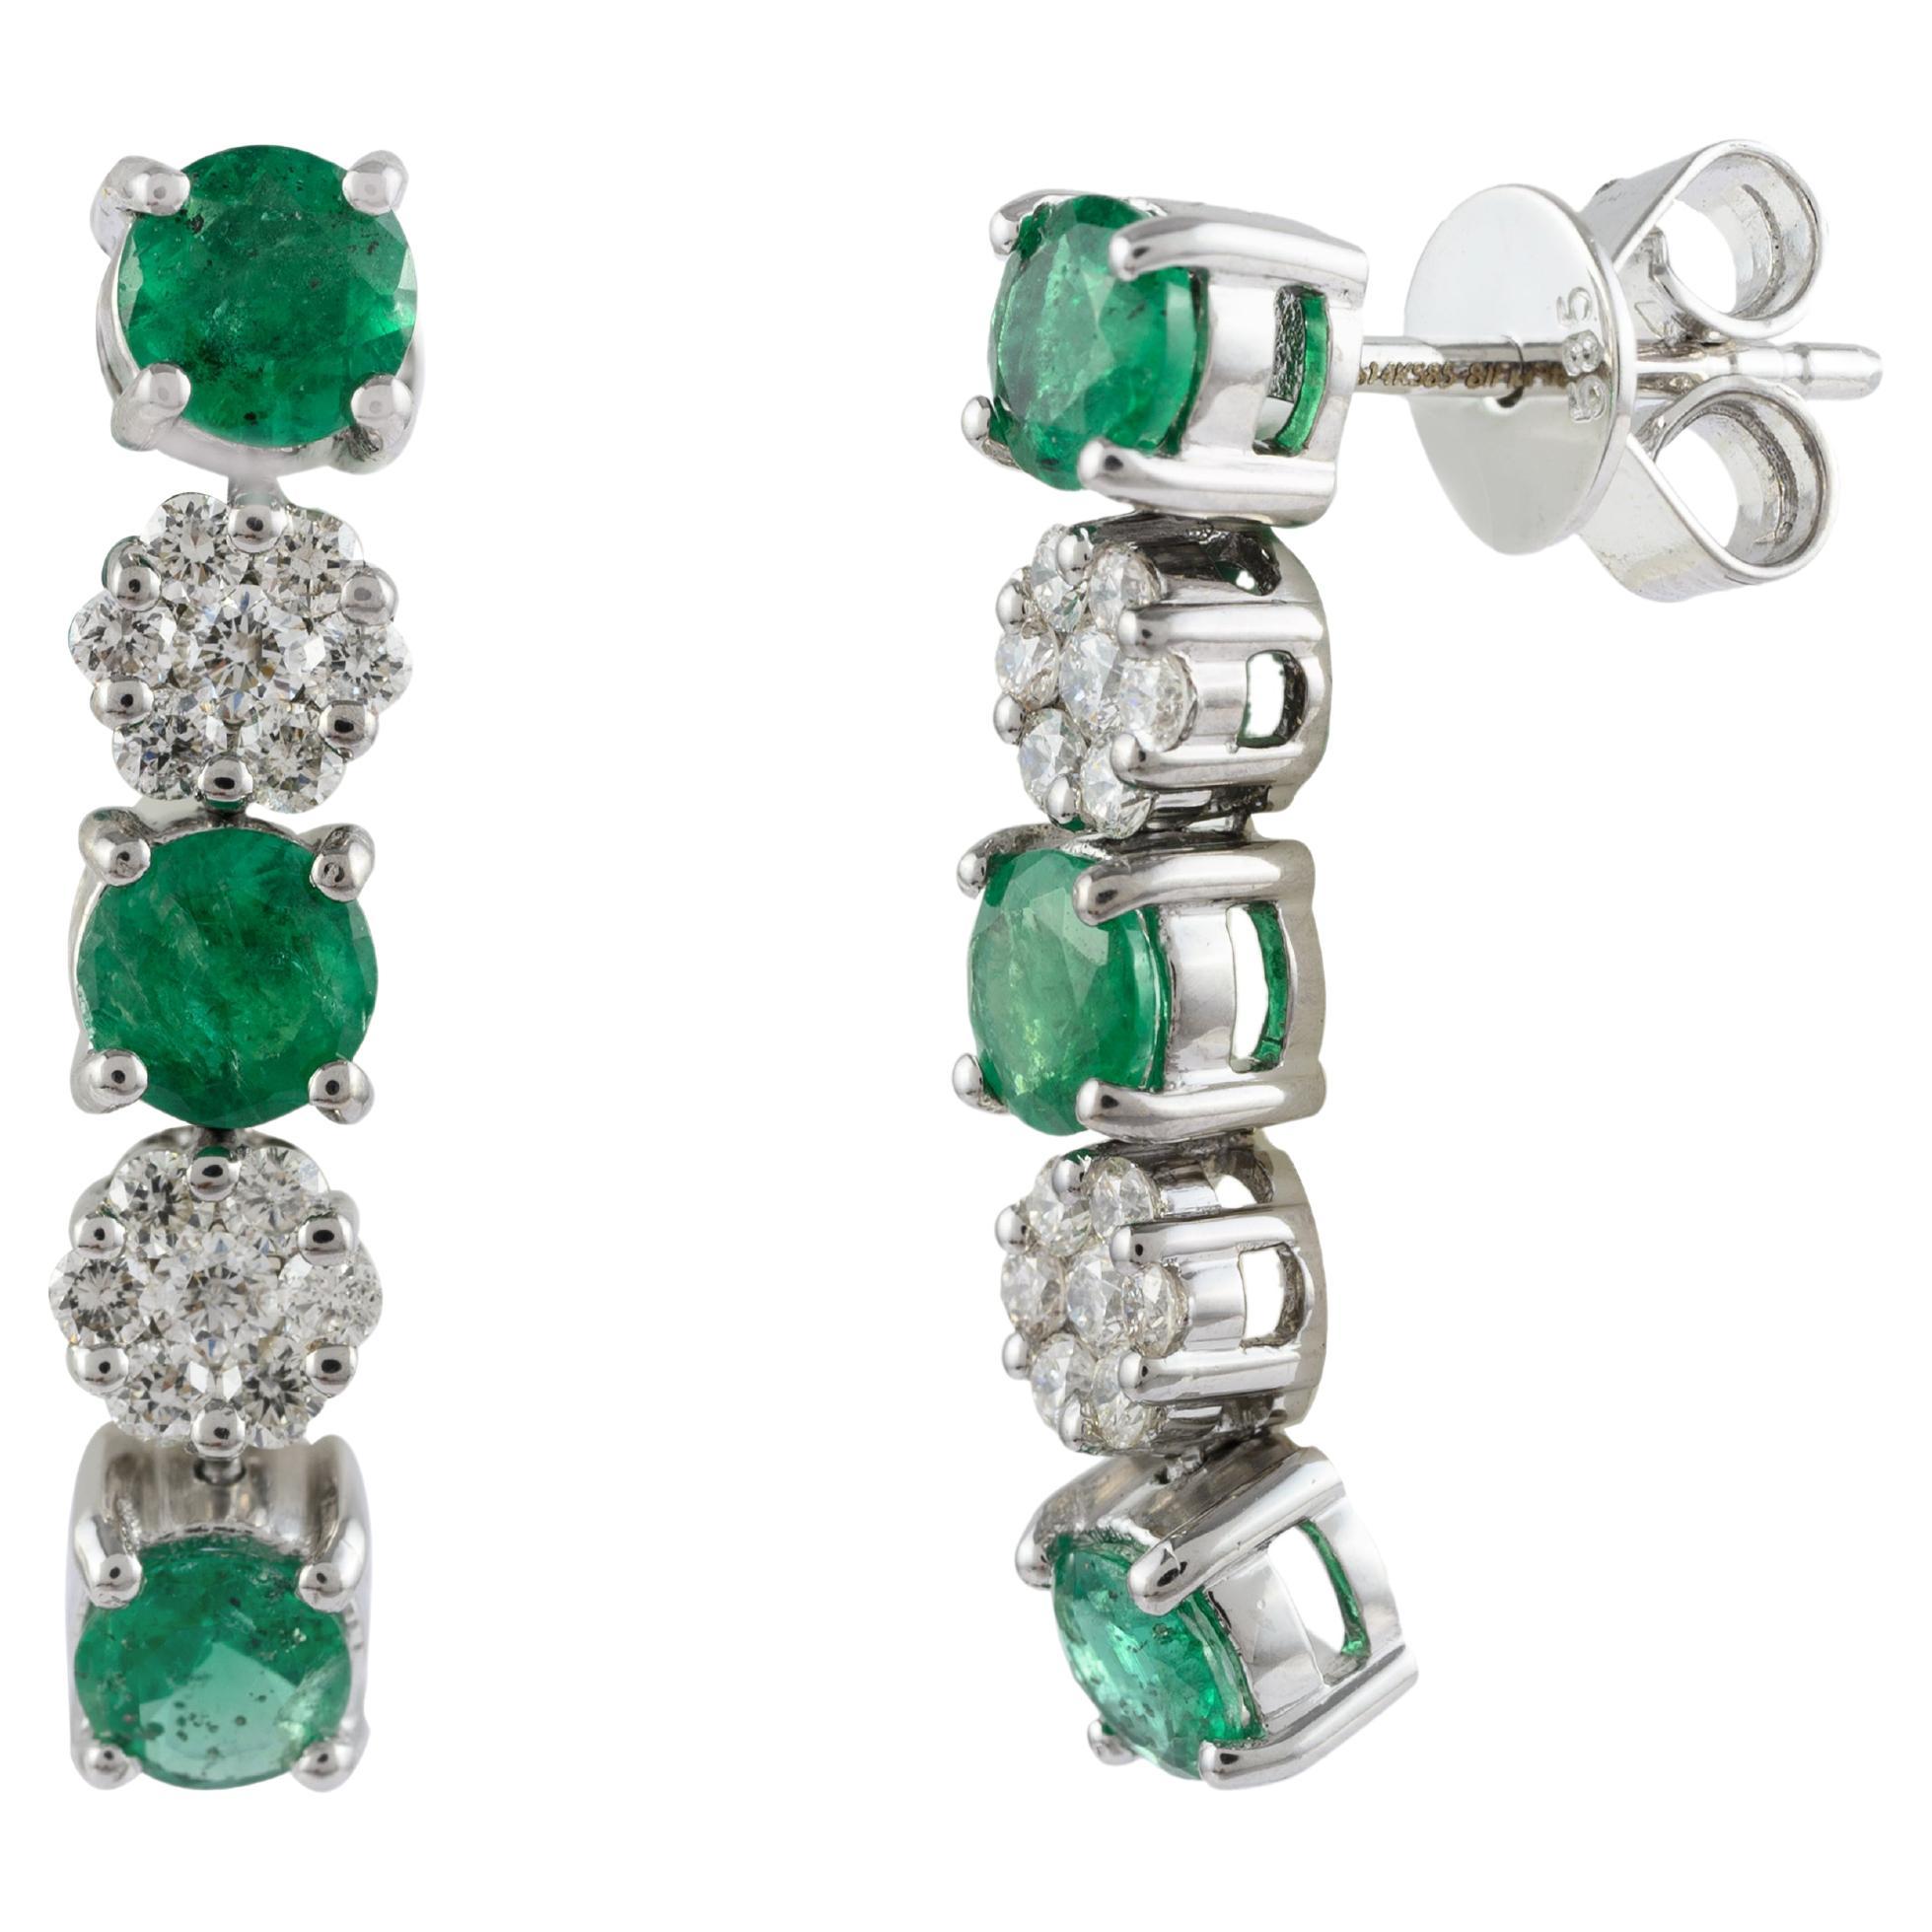 14k Solid White Gold Natural Emerald Diamond Dangle Earrings Gift for Mom